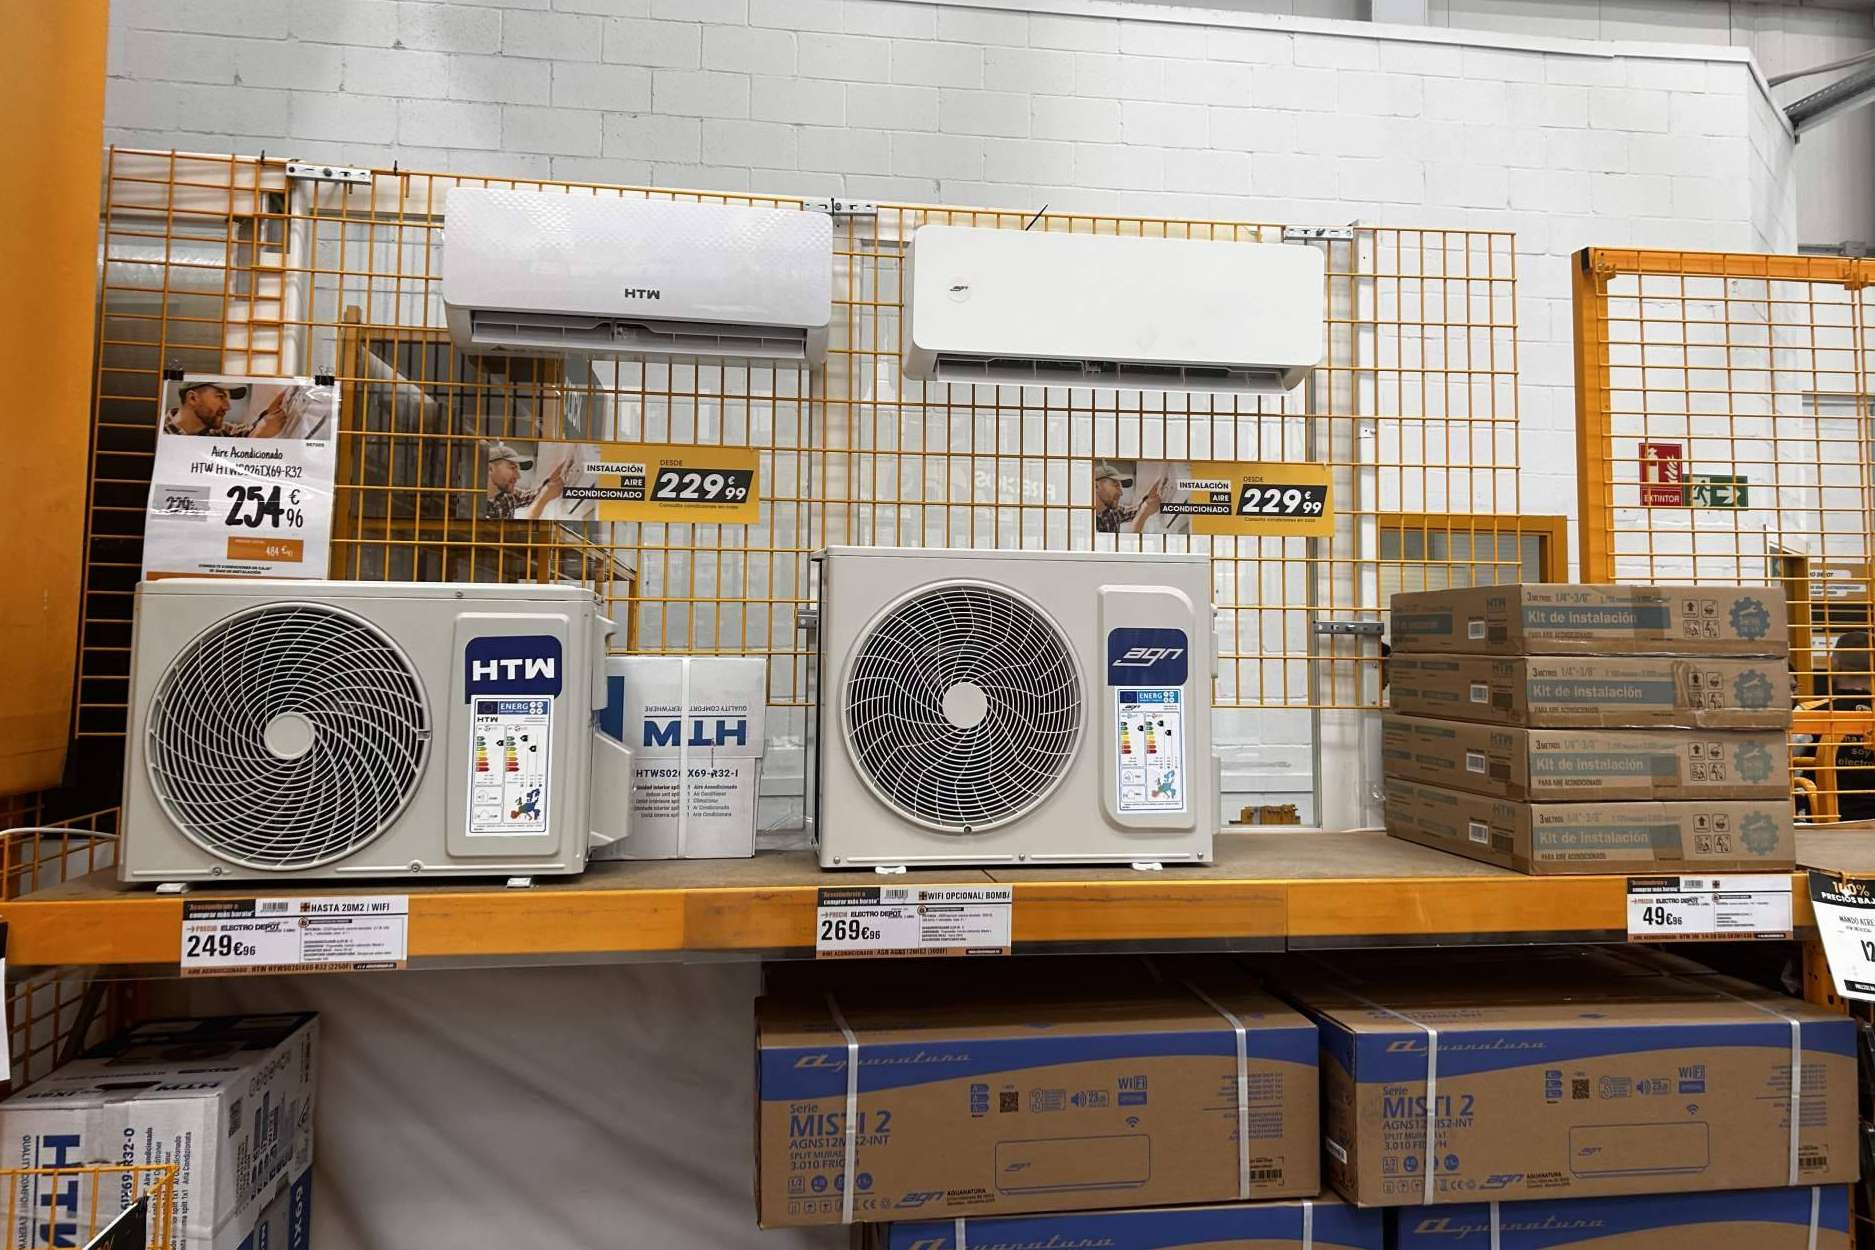  Combatir el calor del verano con los equipos de climatización de Electro Depot 